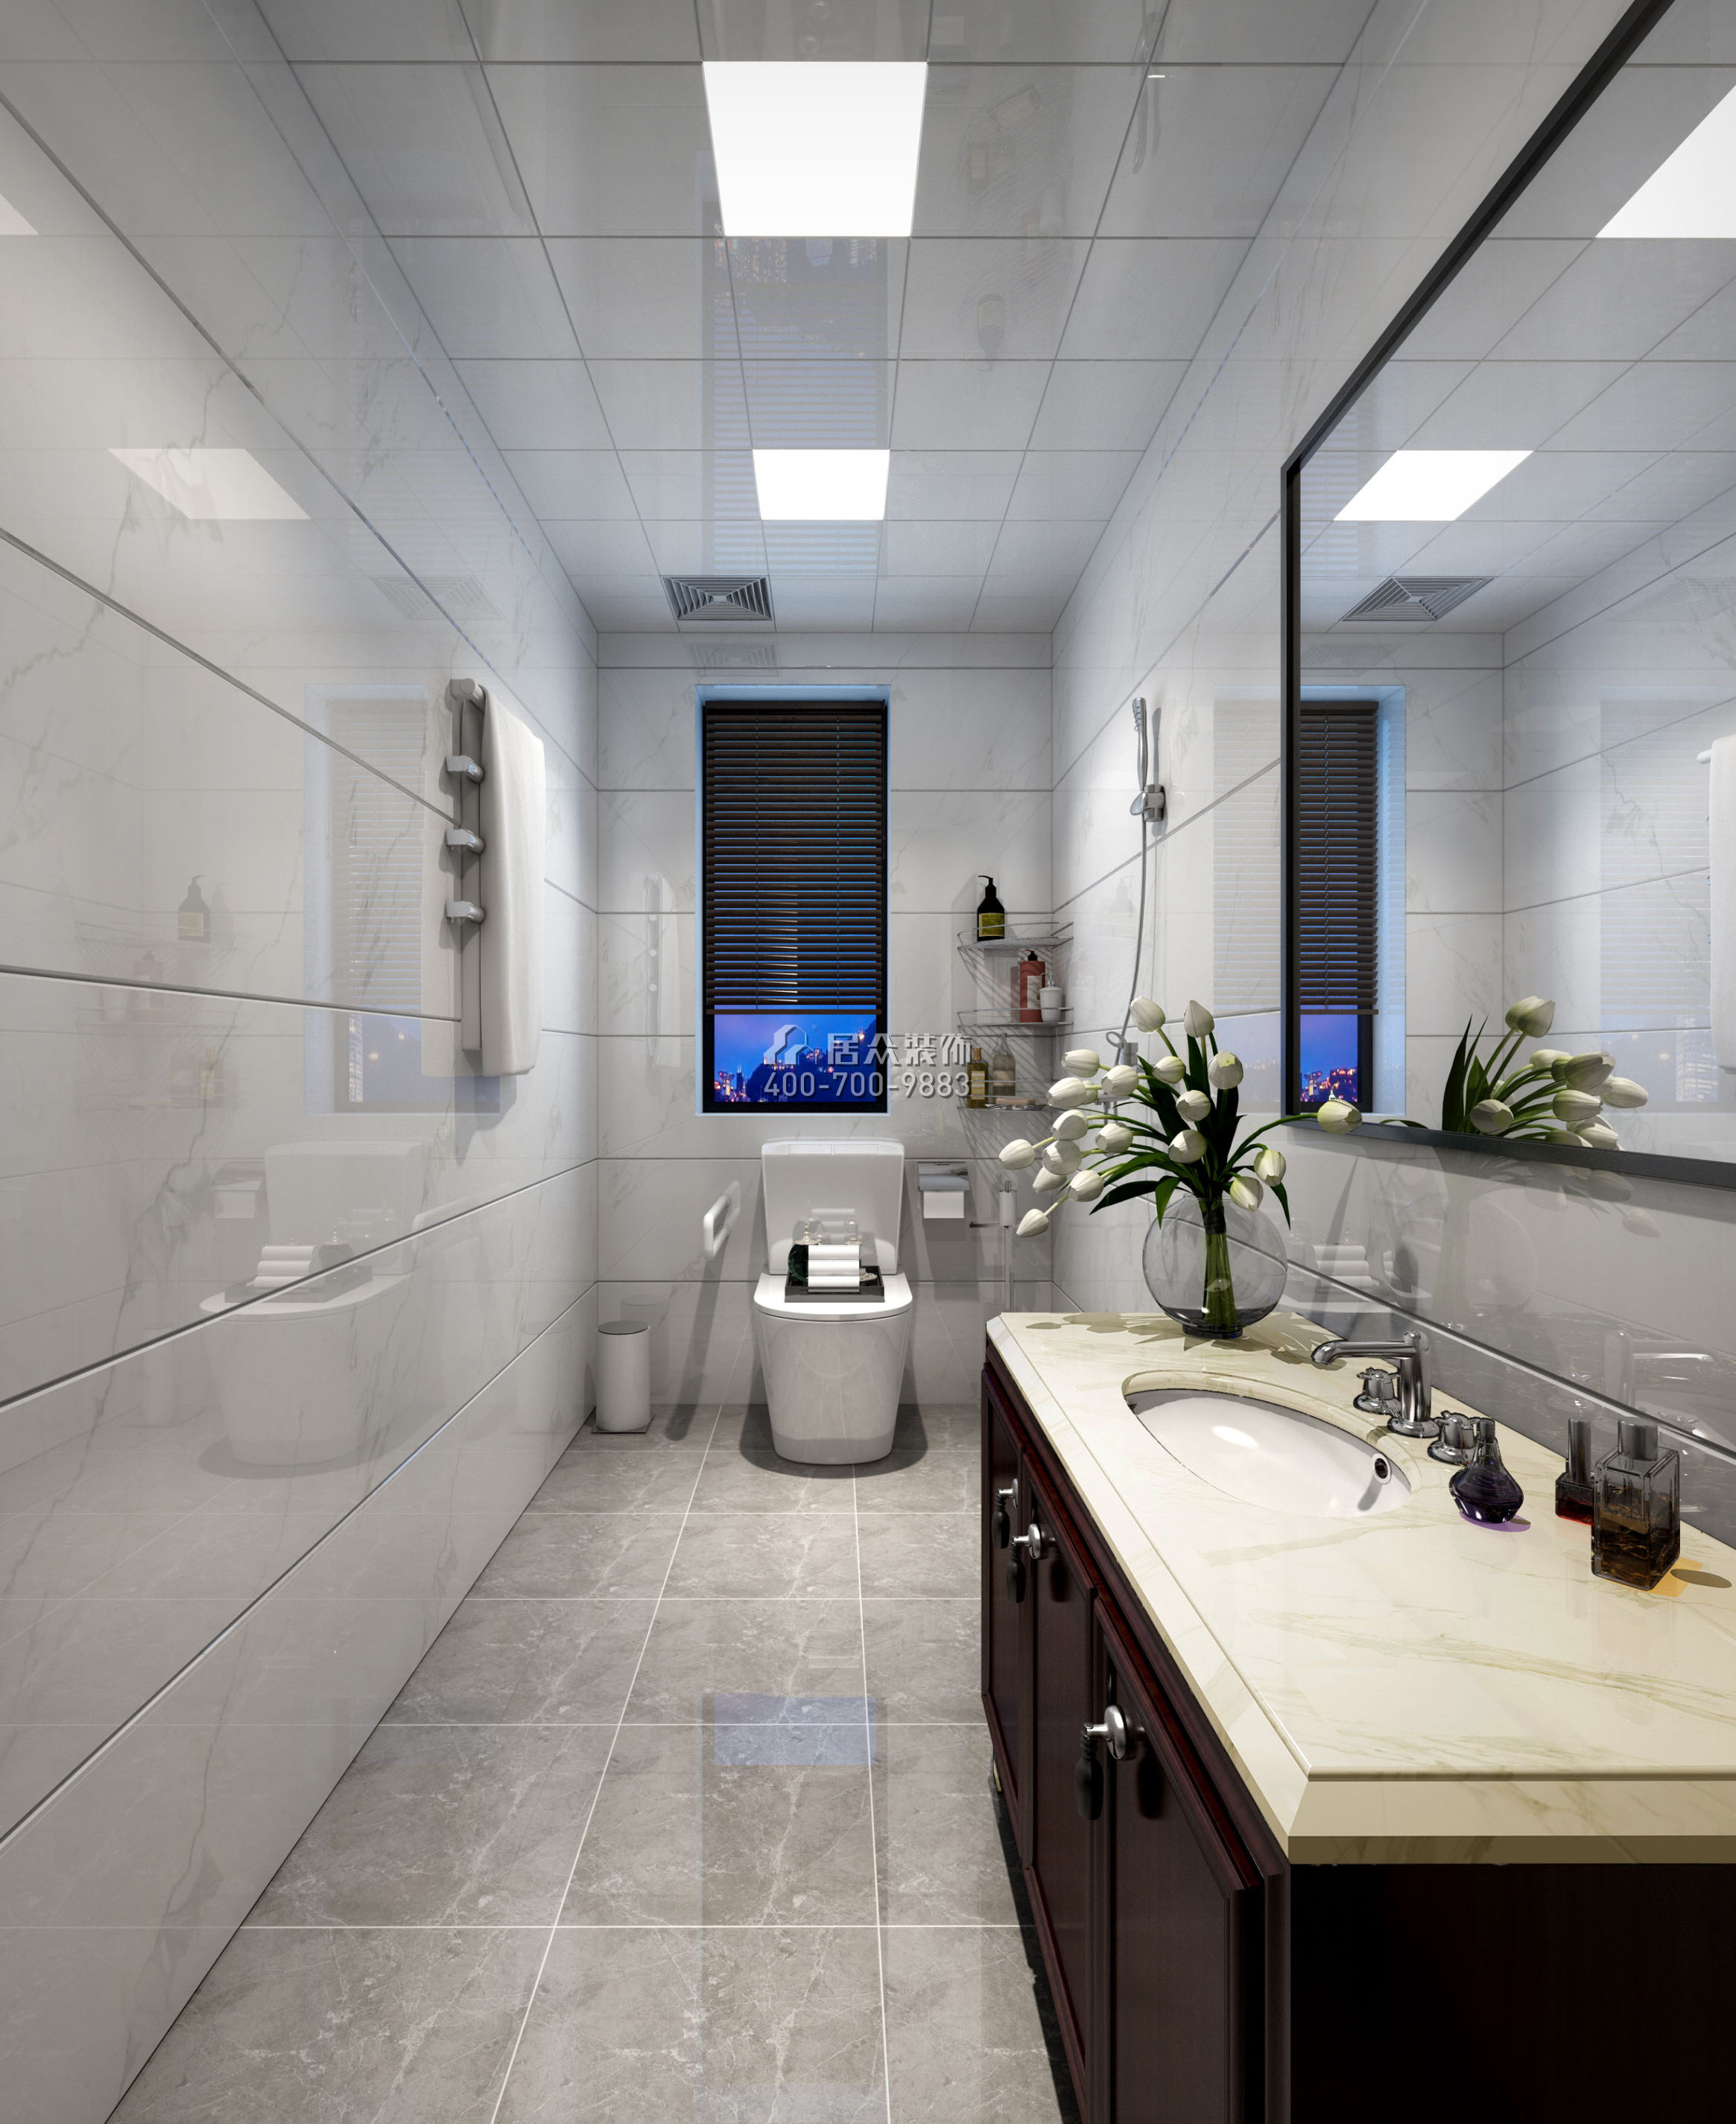 菩提园298平方米中式风格平层户型卫生间装修效果图